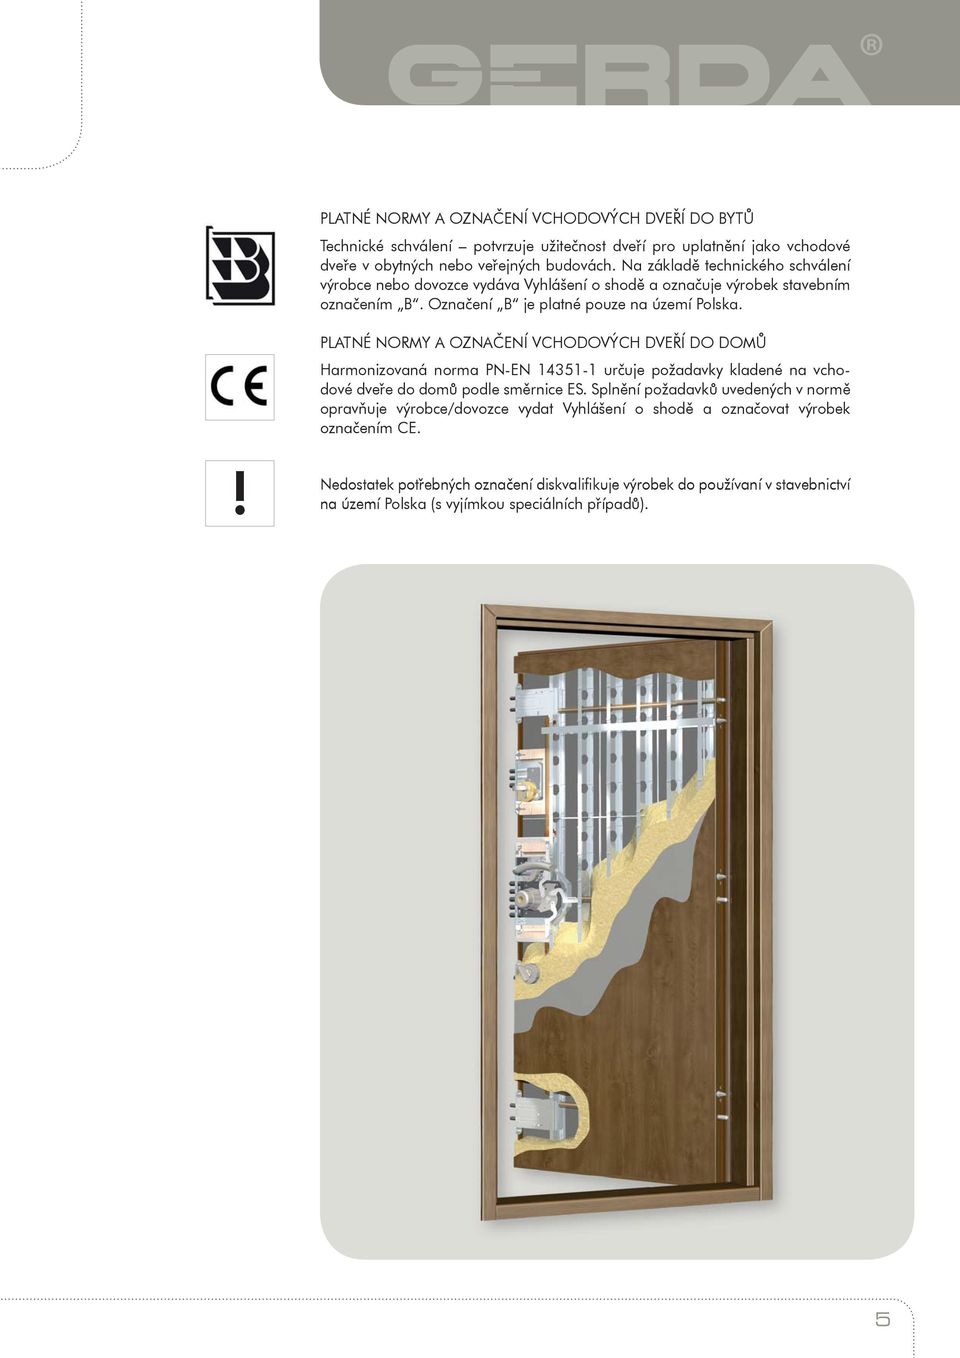 PLATNÉ NORMY A OZNAČENÍ VCHODOVÝCH DVEŘÍ DO DOMŮ Harmonizovaná norma PN-EN 435- určuje požadavky kladené na vchodové dveře do domů podle směrnice ES.